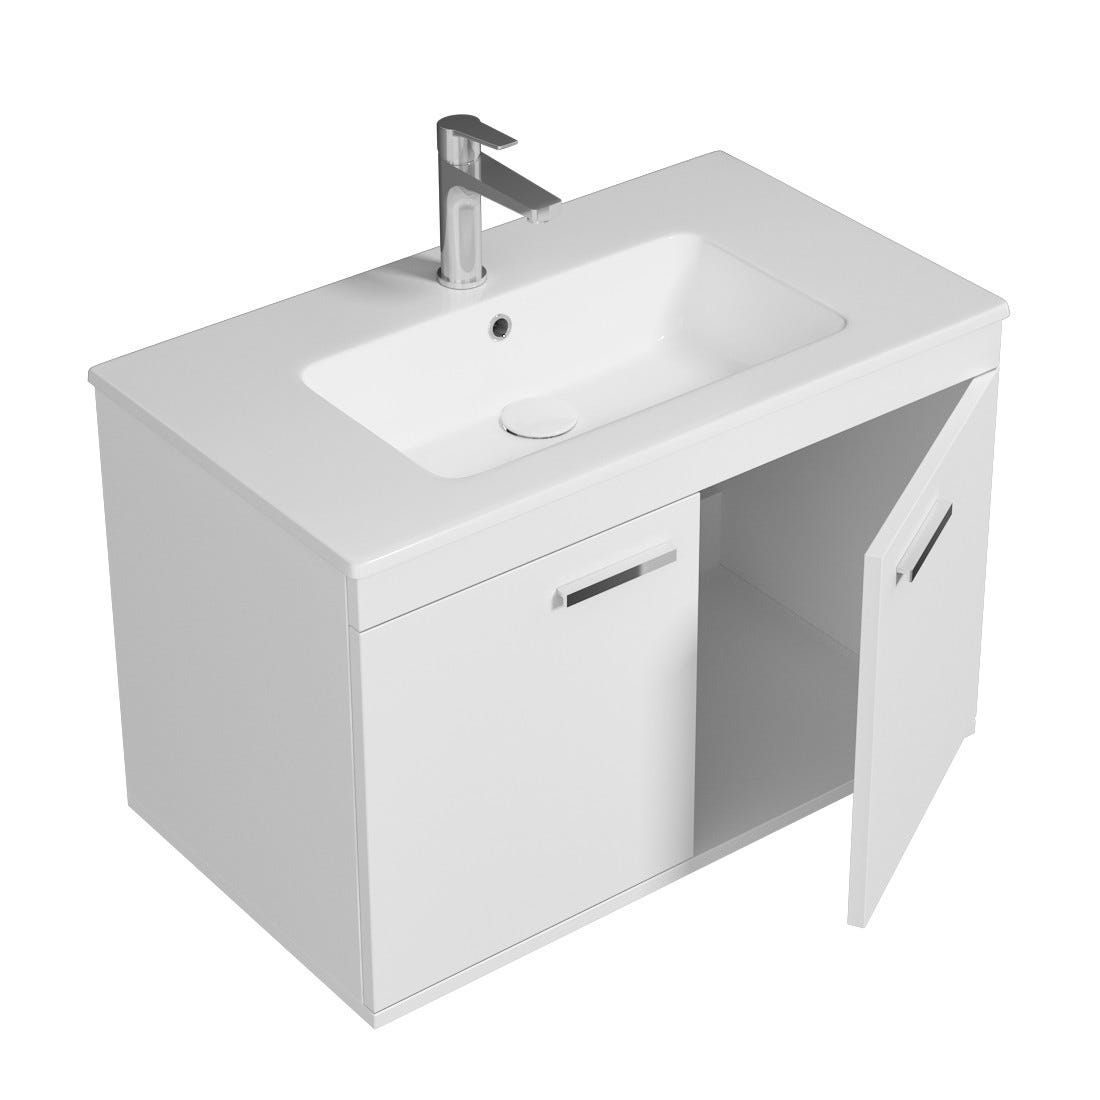 RUBITE Meuble salle de bain simple vasque 2 portes blanc largeur 80 cm 1